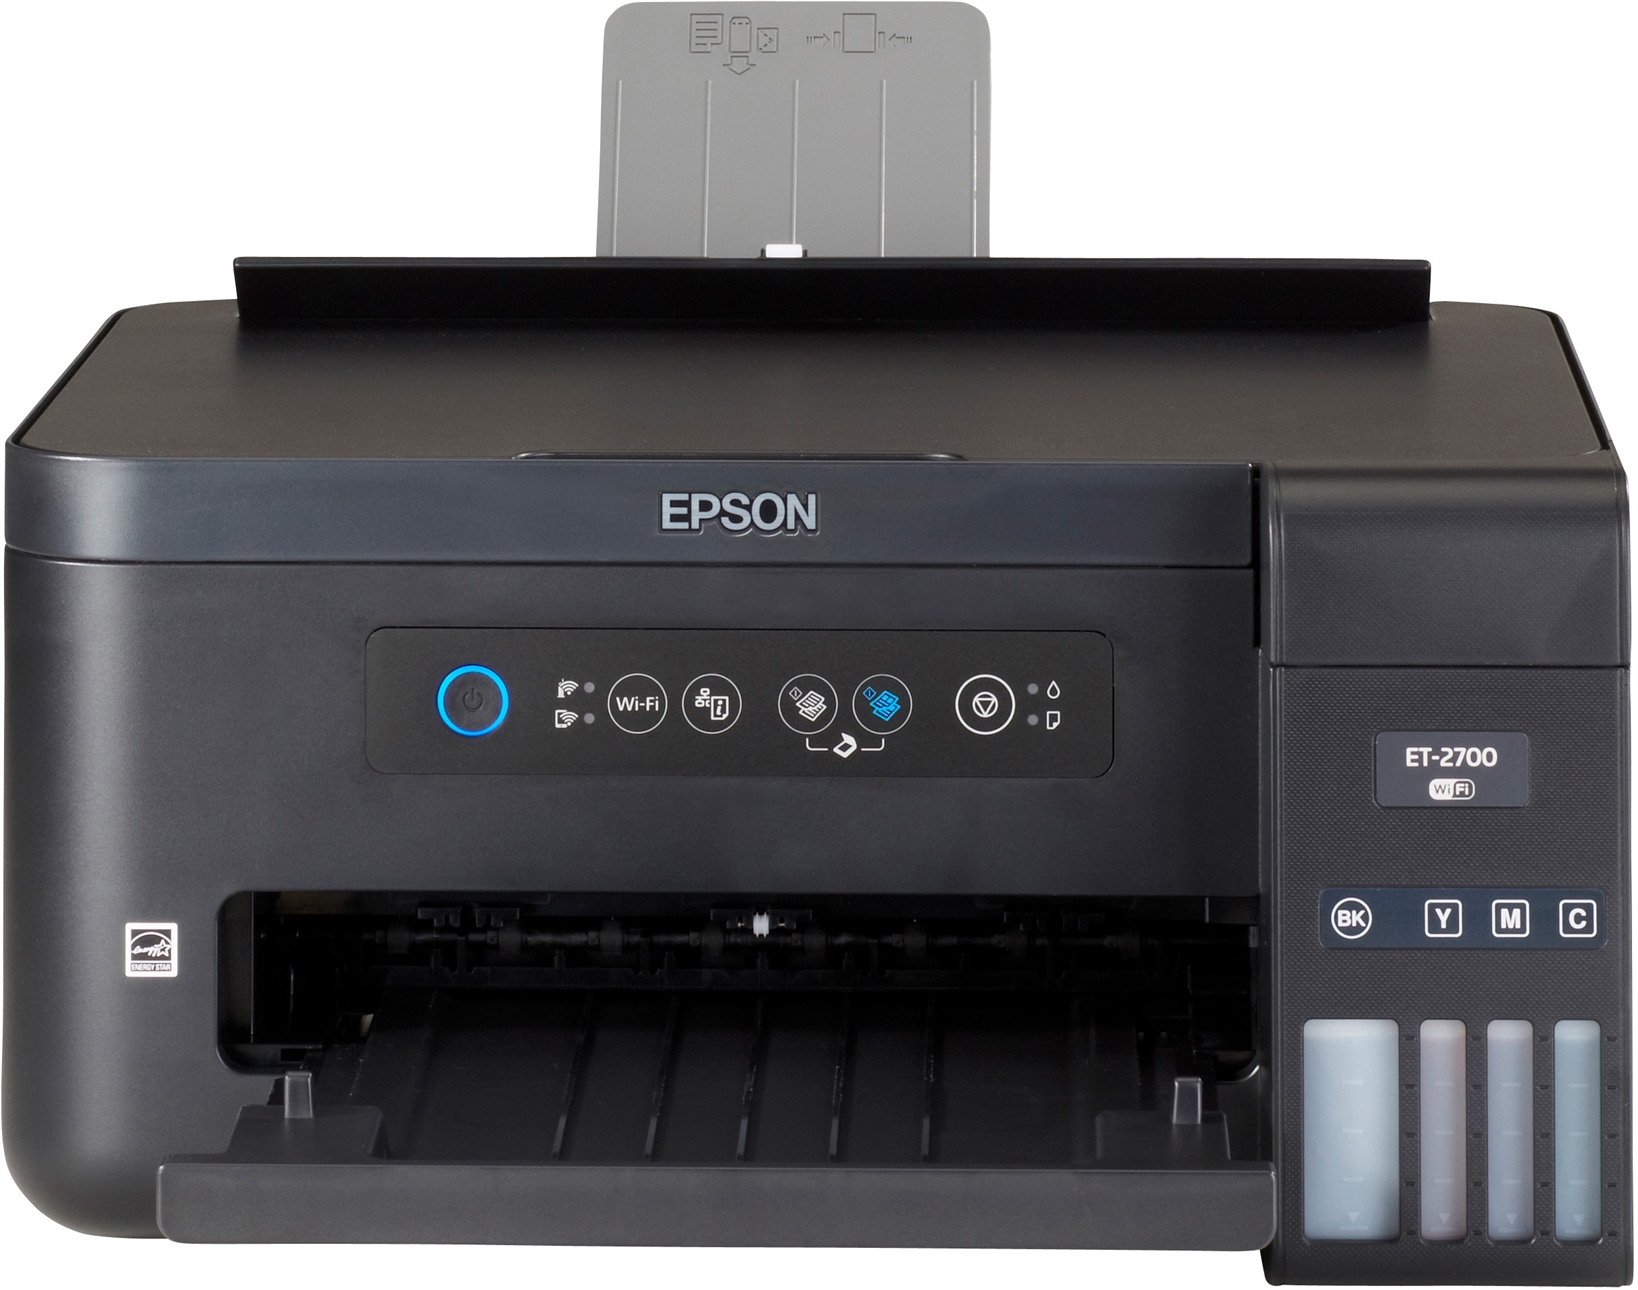 Impresora Epson Ecotank Et 2700 Opiniones Y Precios Ocu 2785